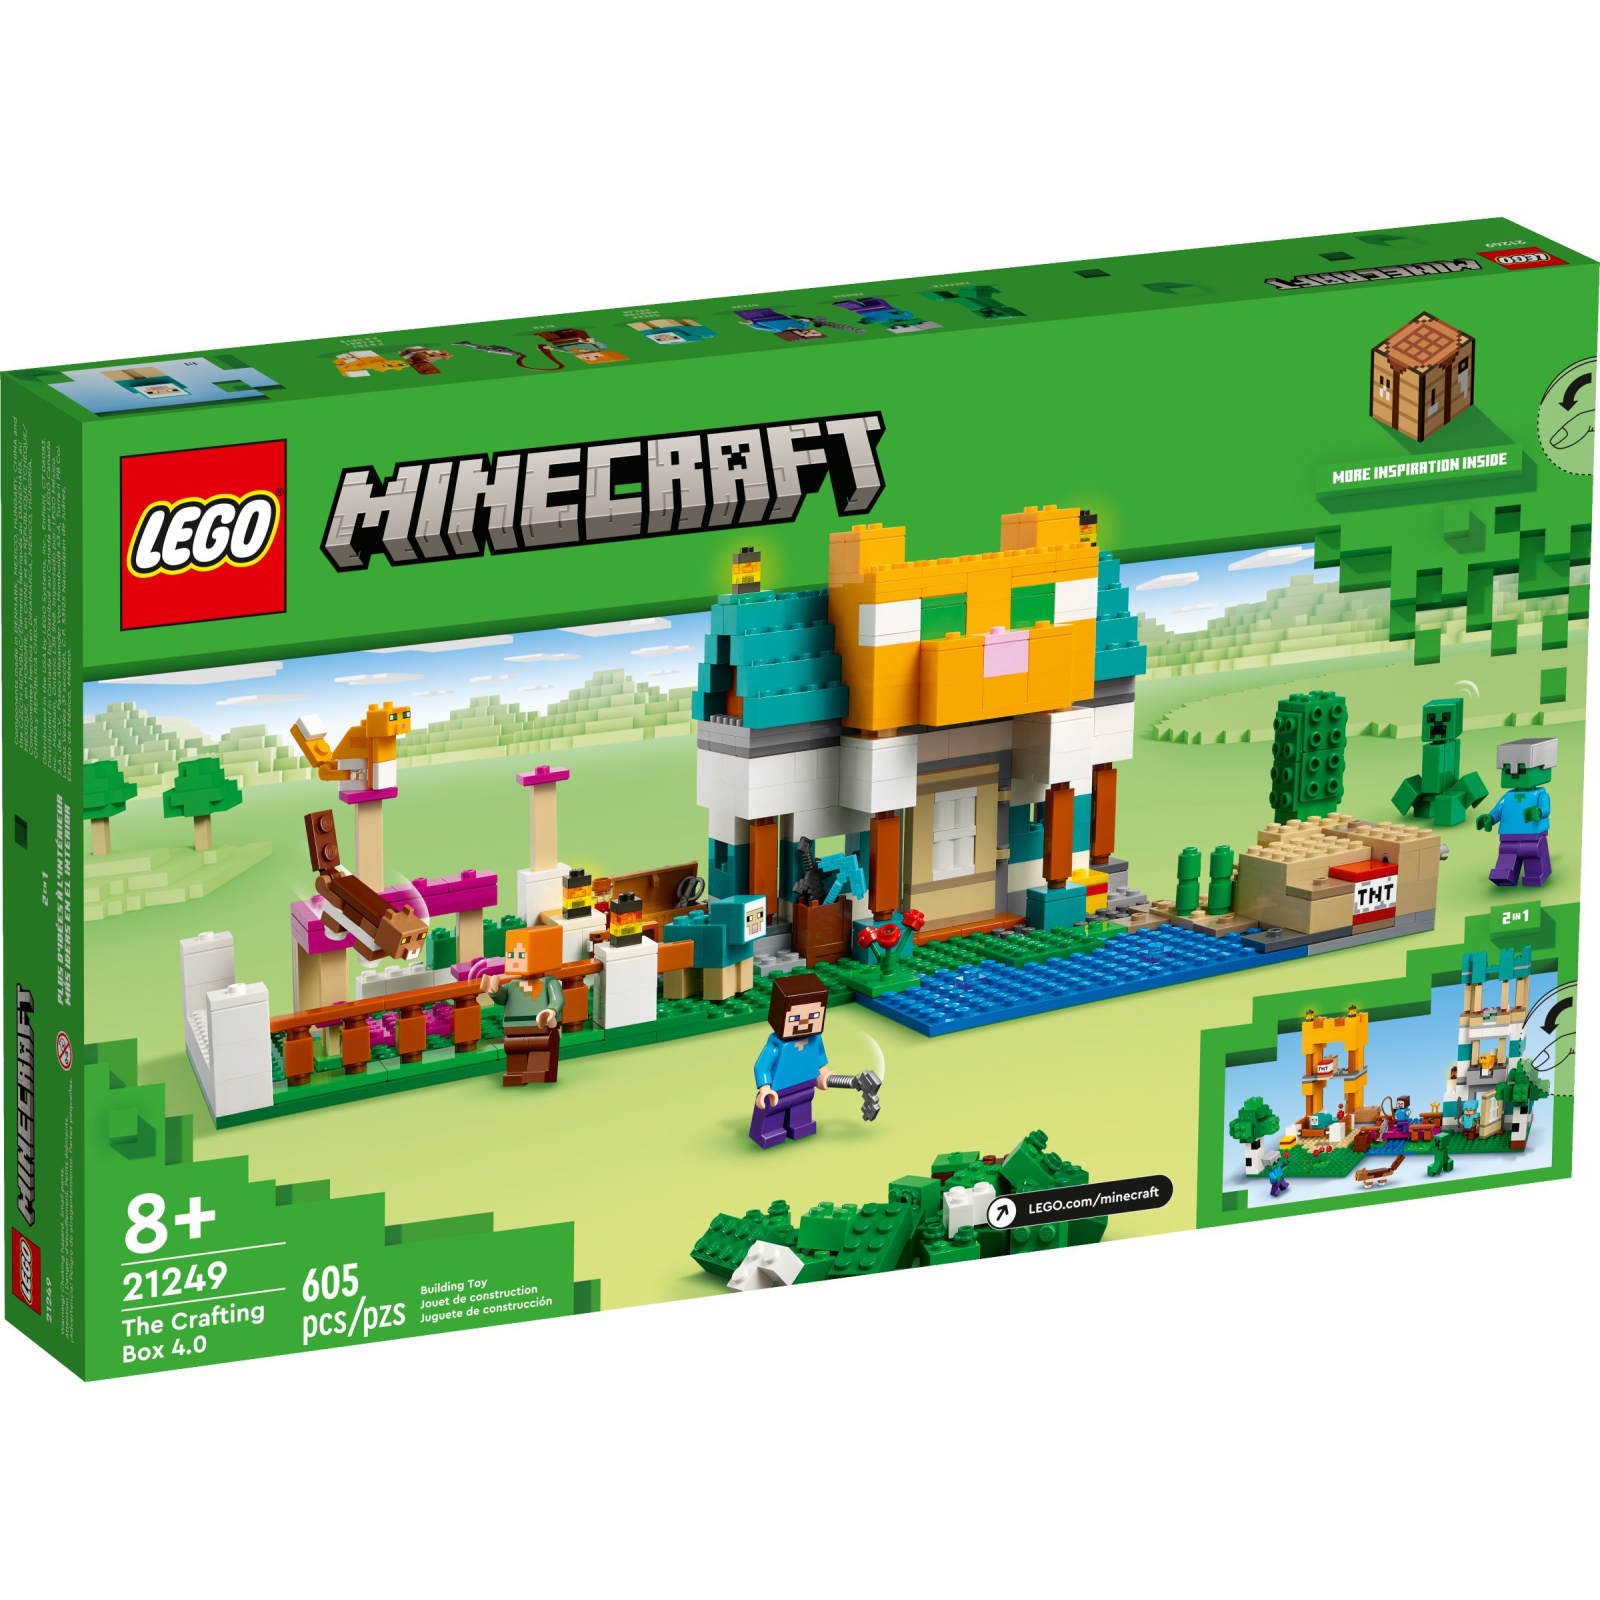 Конструктор LEGO Minecraft Сундук для творчества 4.0, 605 деталей (21249) изображение 7